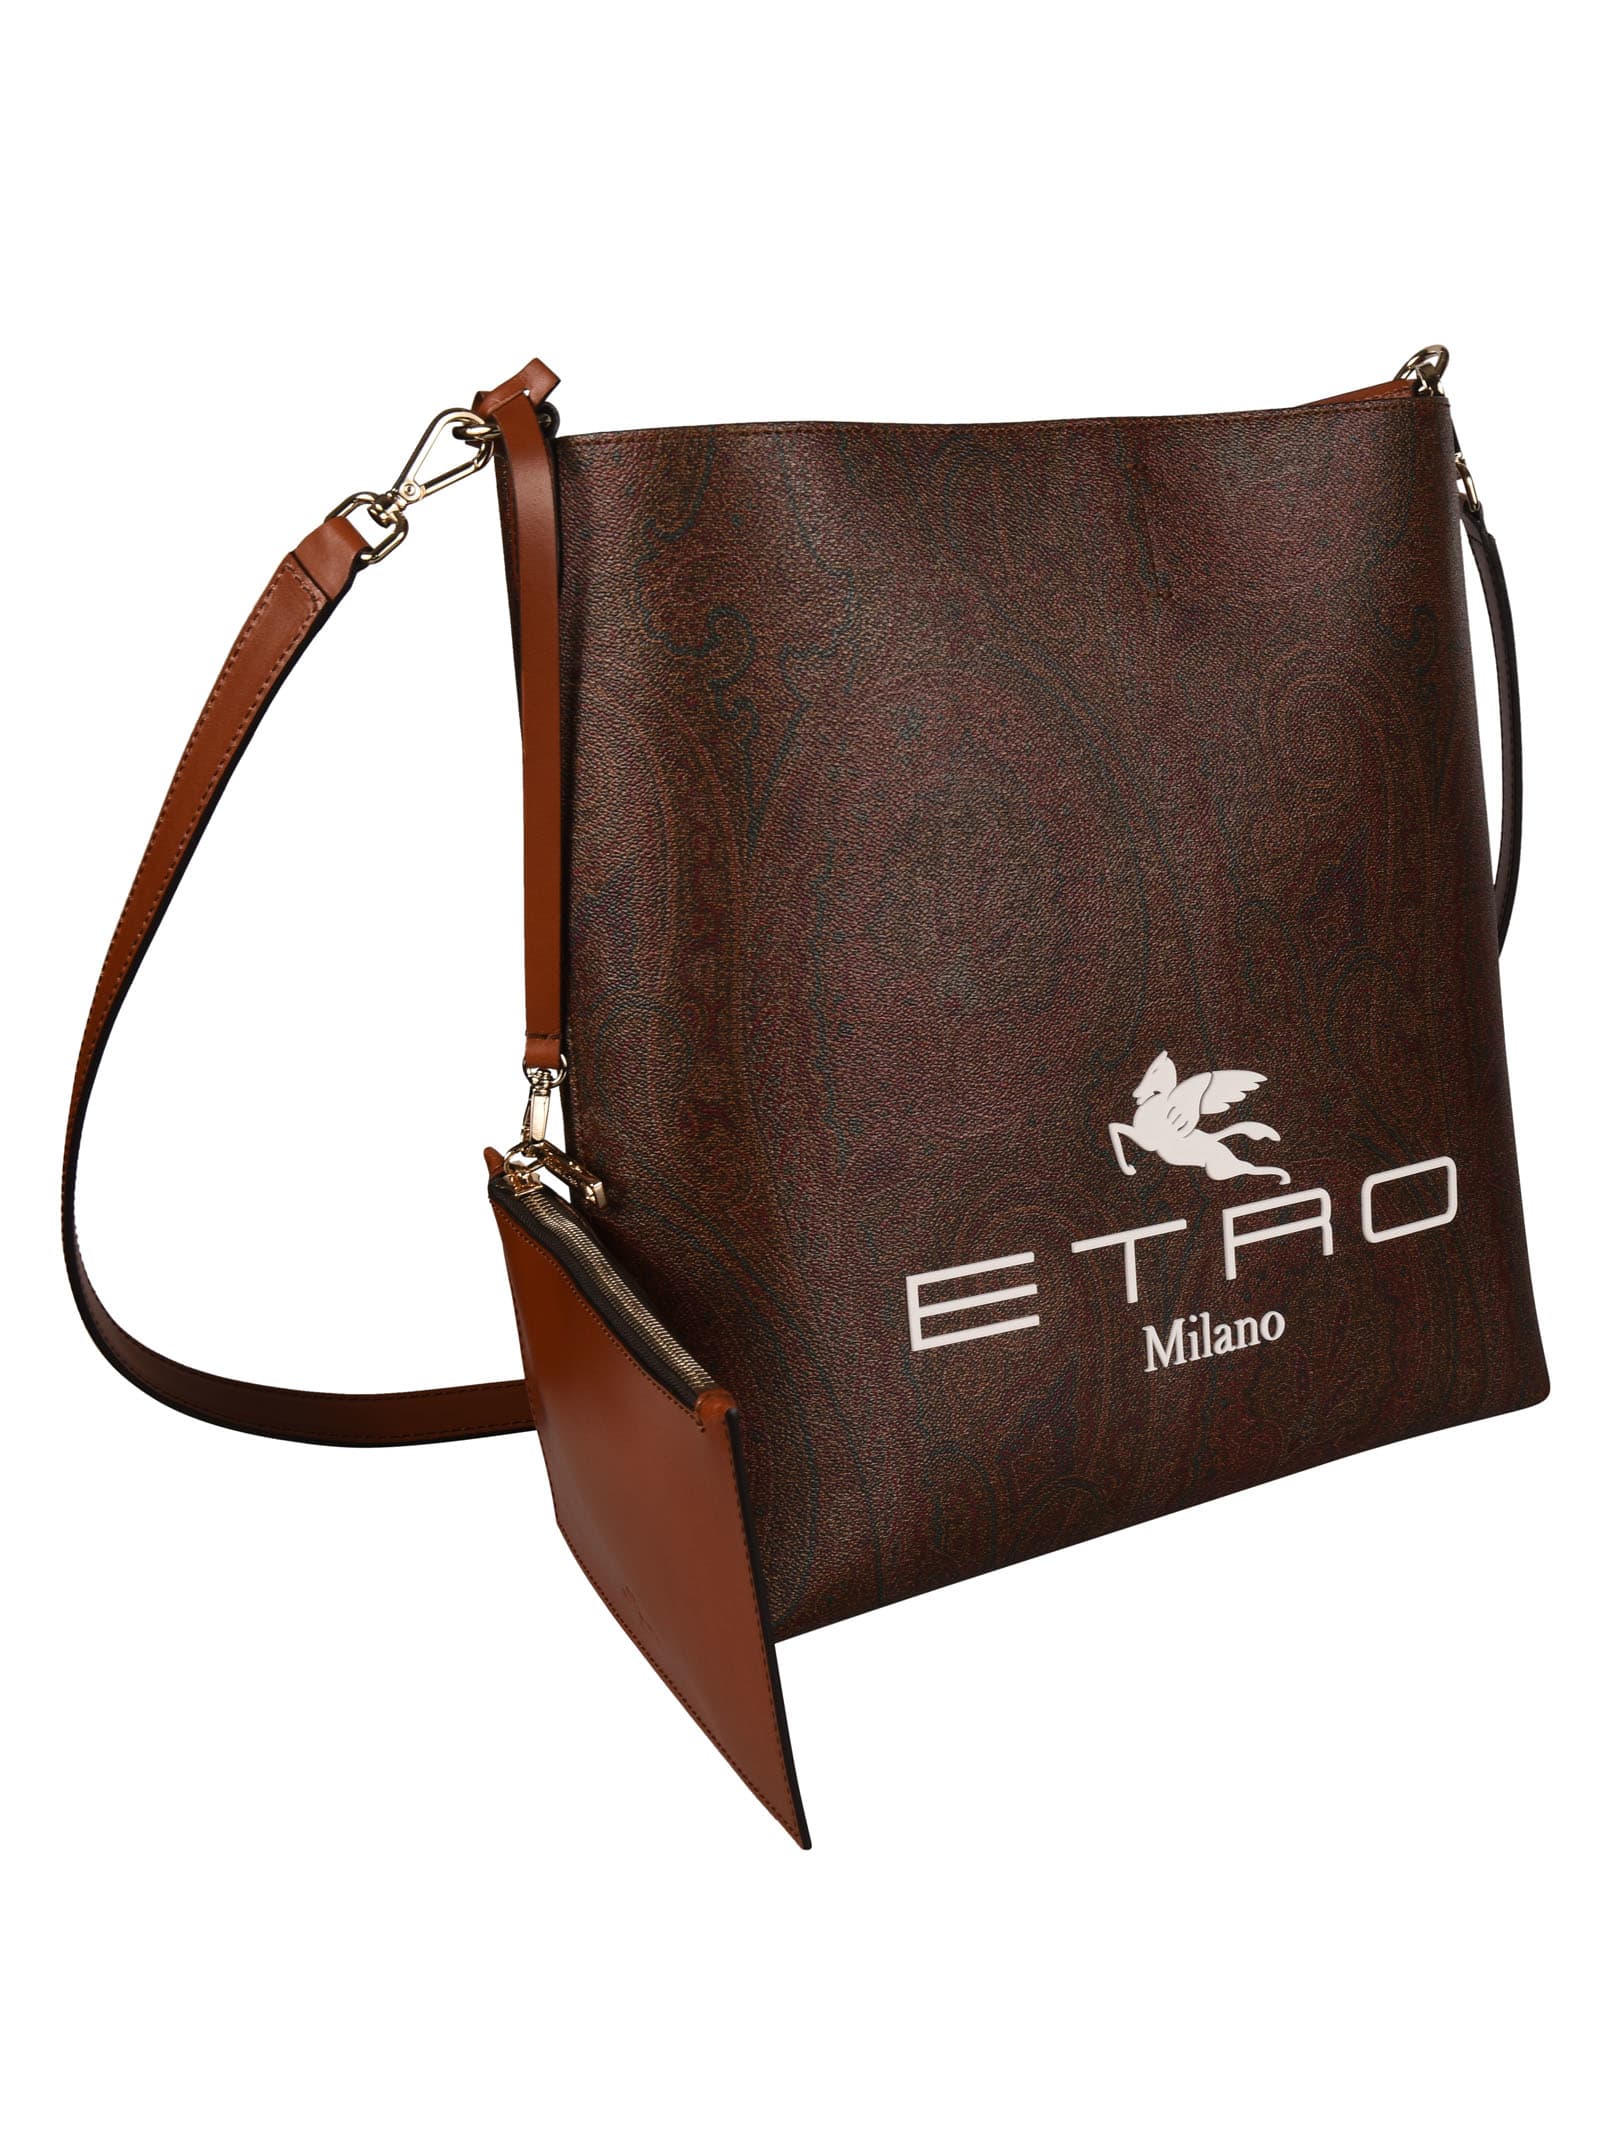 Etro Milano Crossbody Handbag